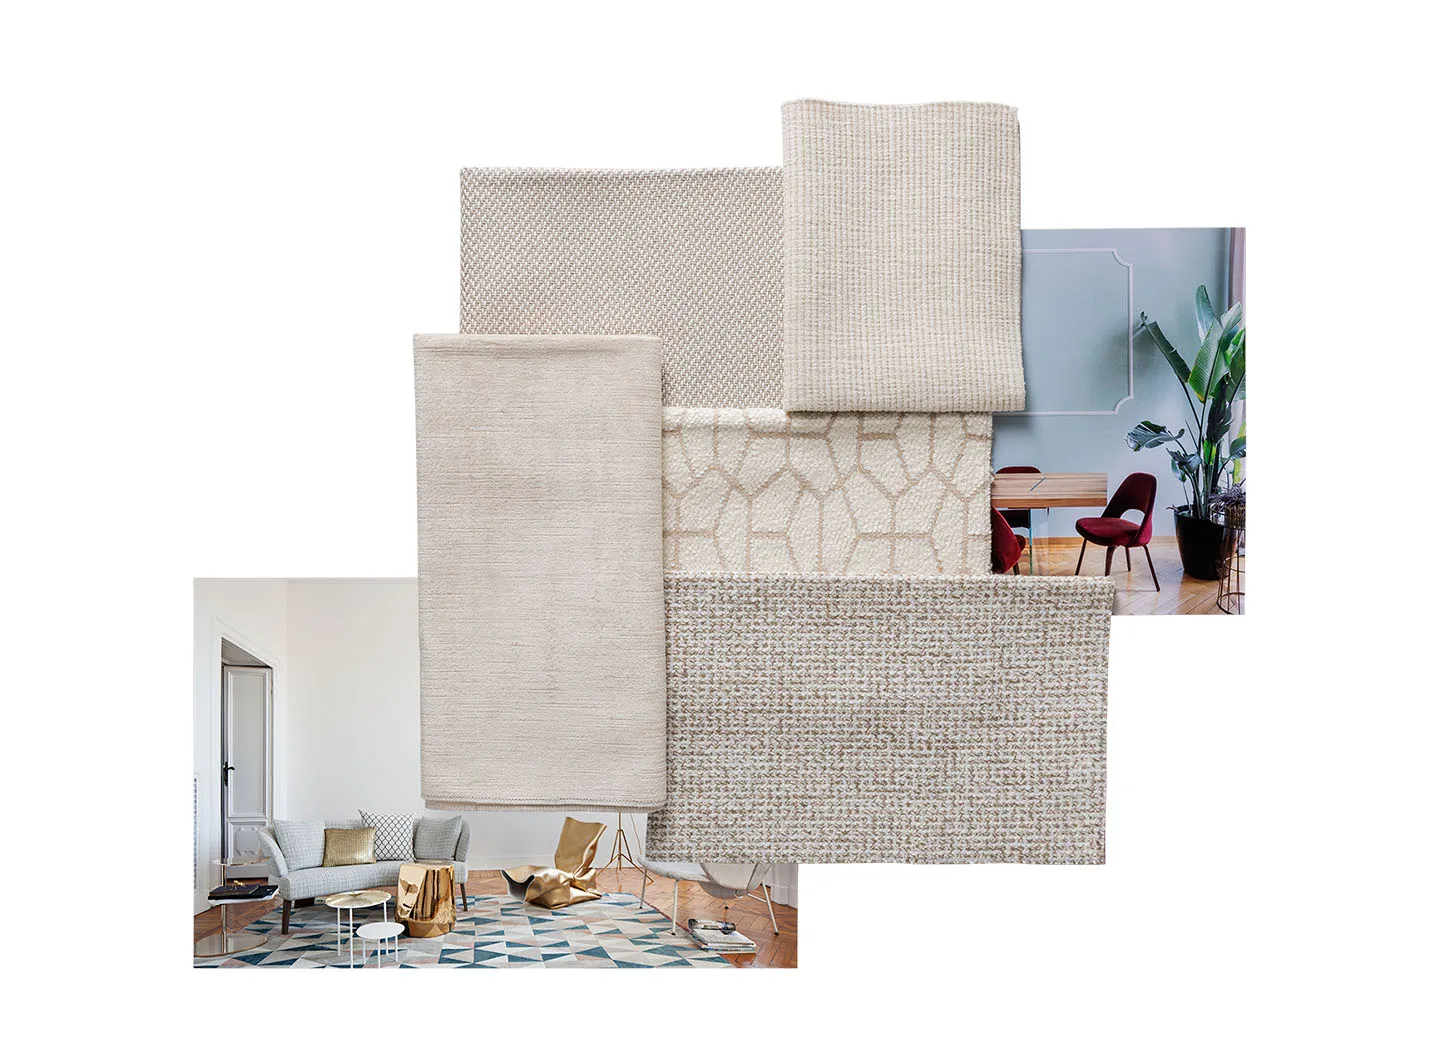 Indoor fabbrica, Filati naturali si intrecciano in strutture eleganti e materiche per creare tessuti confortevoli e originali.